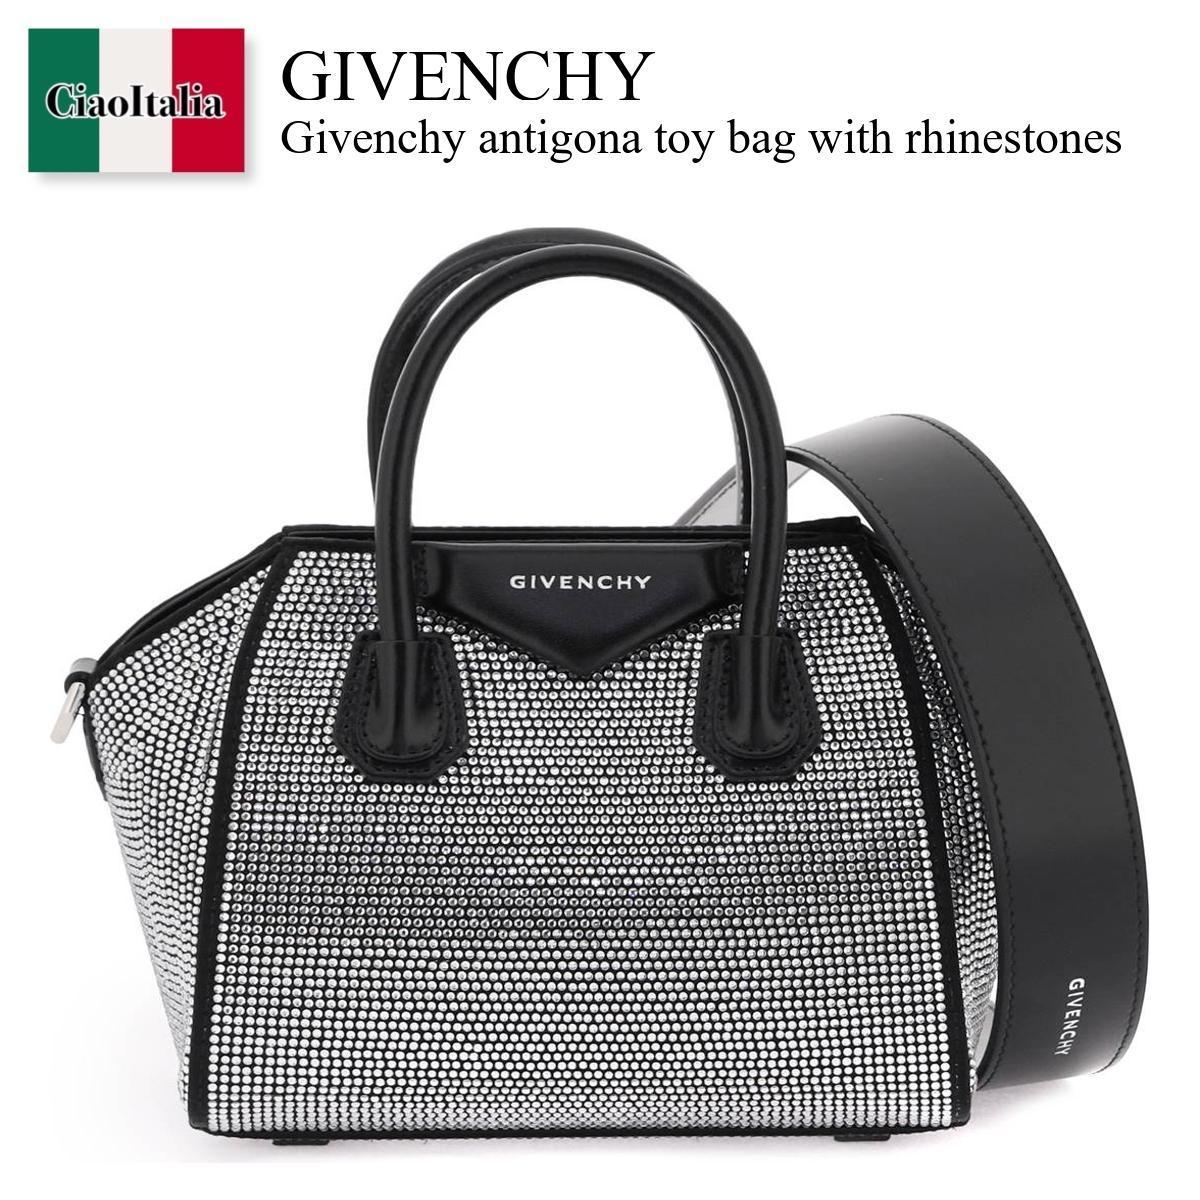 ジバンシィ ジバンシィ / Givenchy Antigona Toy Bag With Rhinestones / BB50WKB1QC / BB50WKB1QC 001 / BB50WKB1QC001 / ハンドバッグ / 「正規品補償」「VIP価格販売」「お買い物サポート」